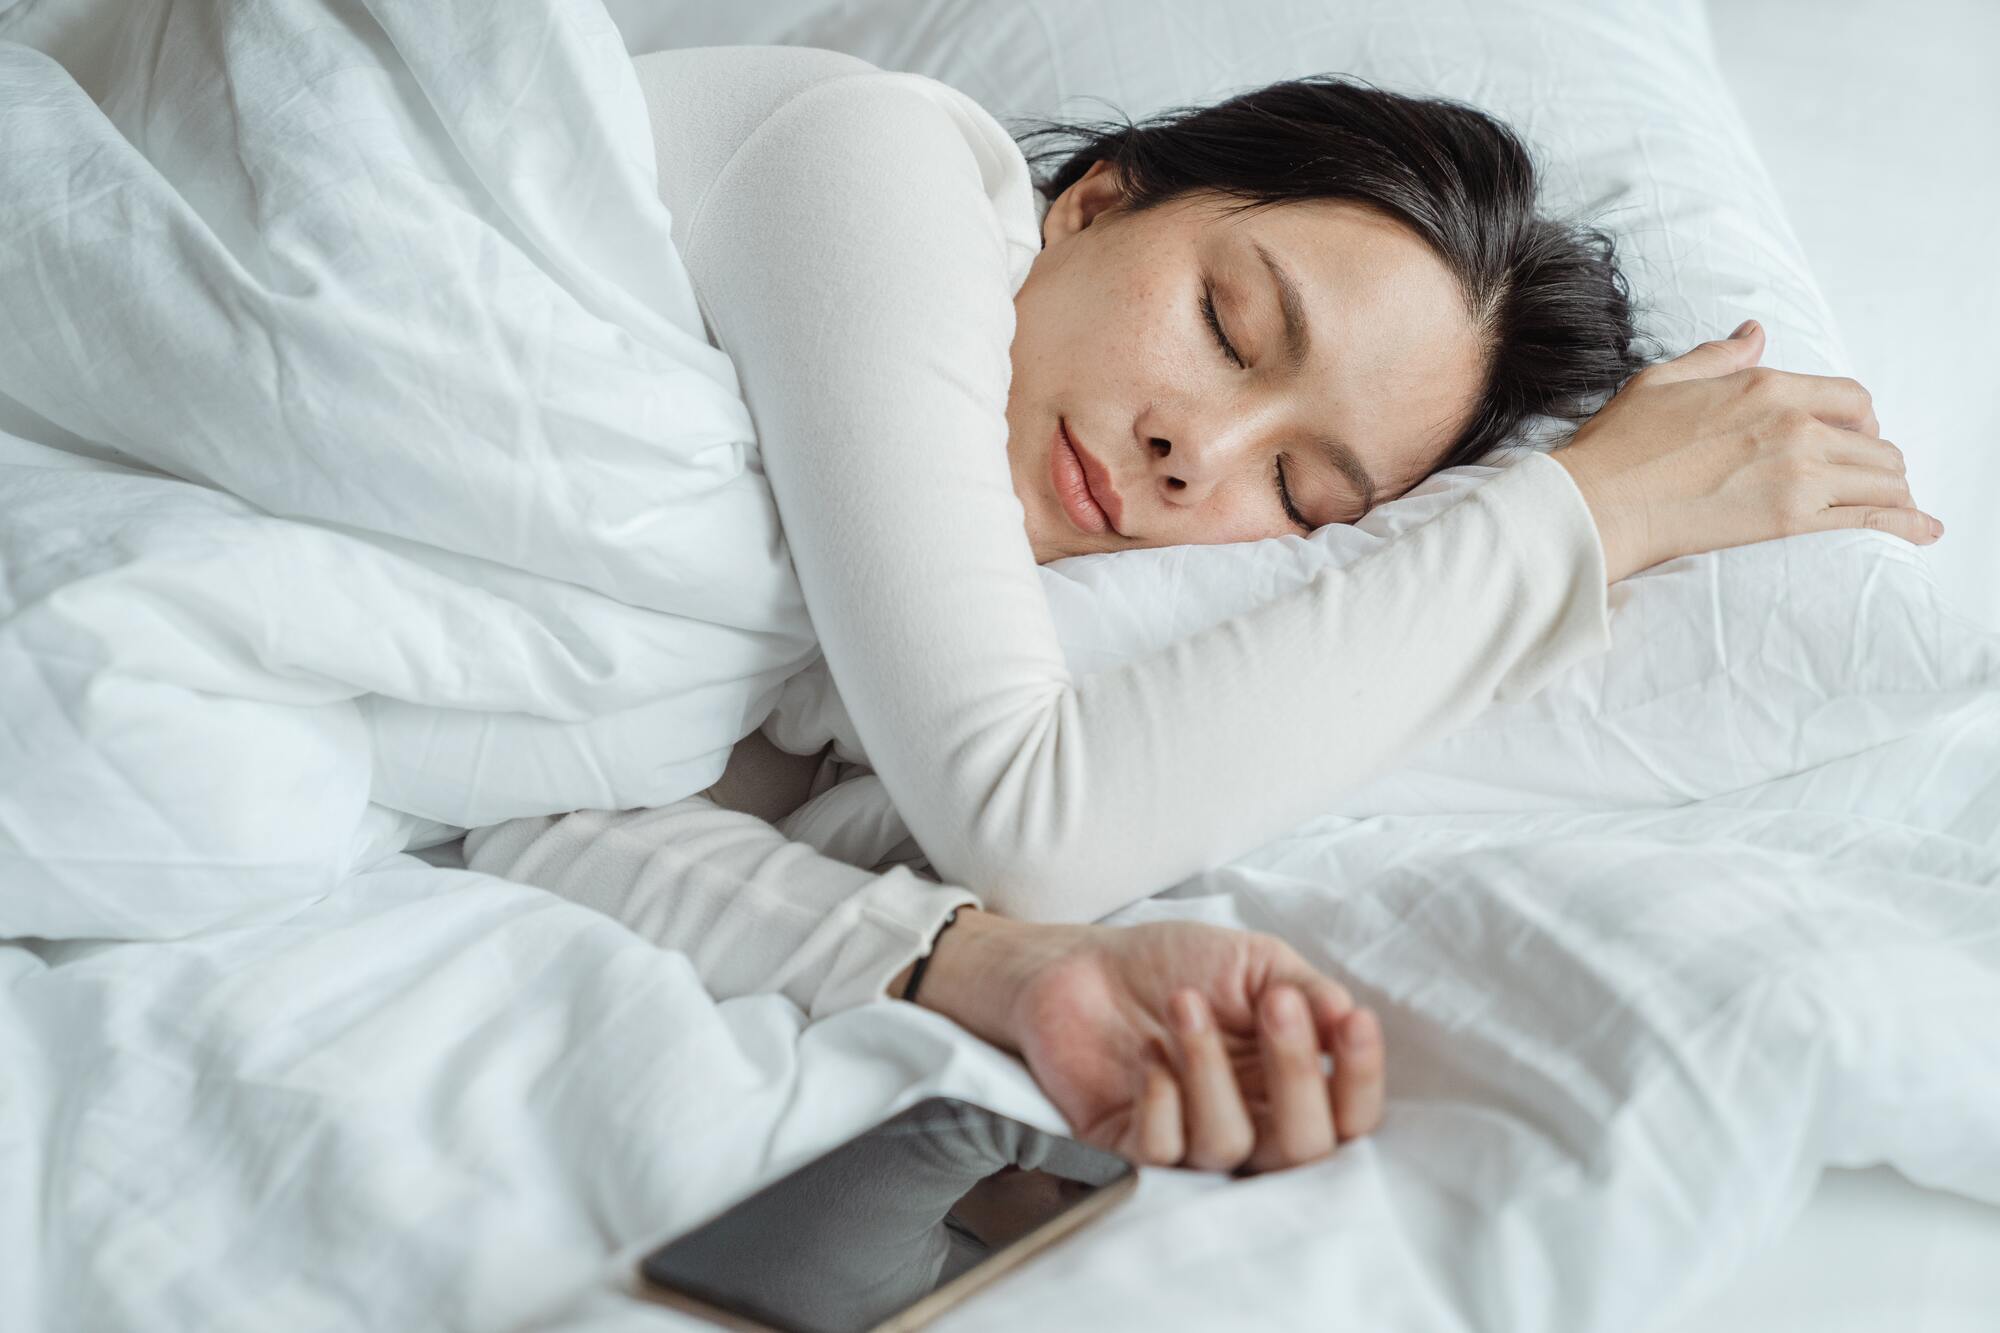 Експерт порадив уникати важкої їжі перед сном